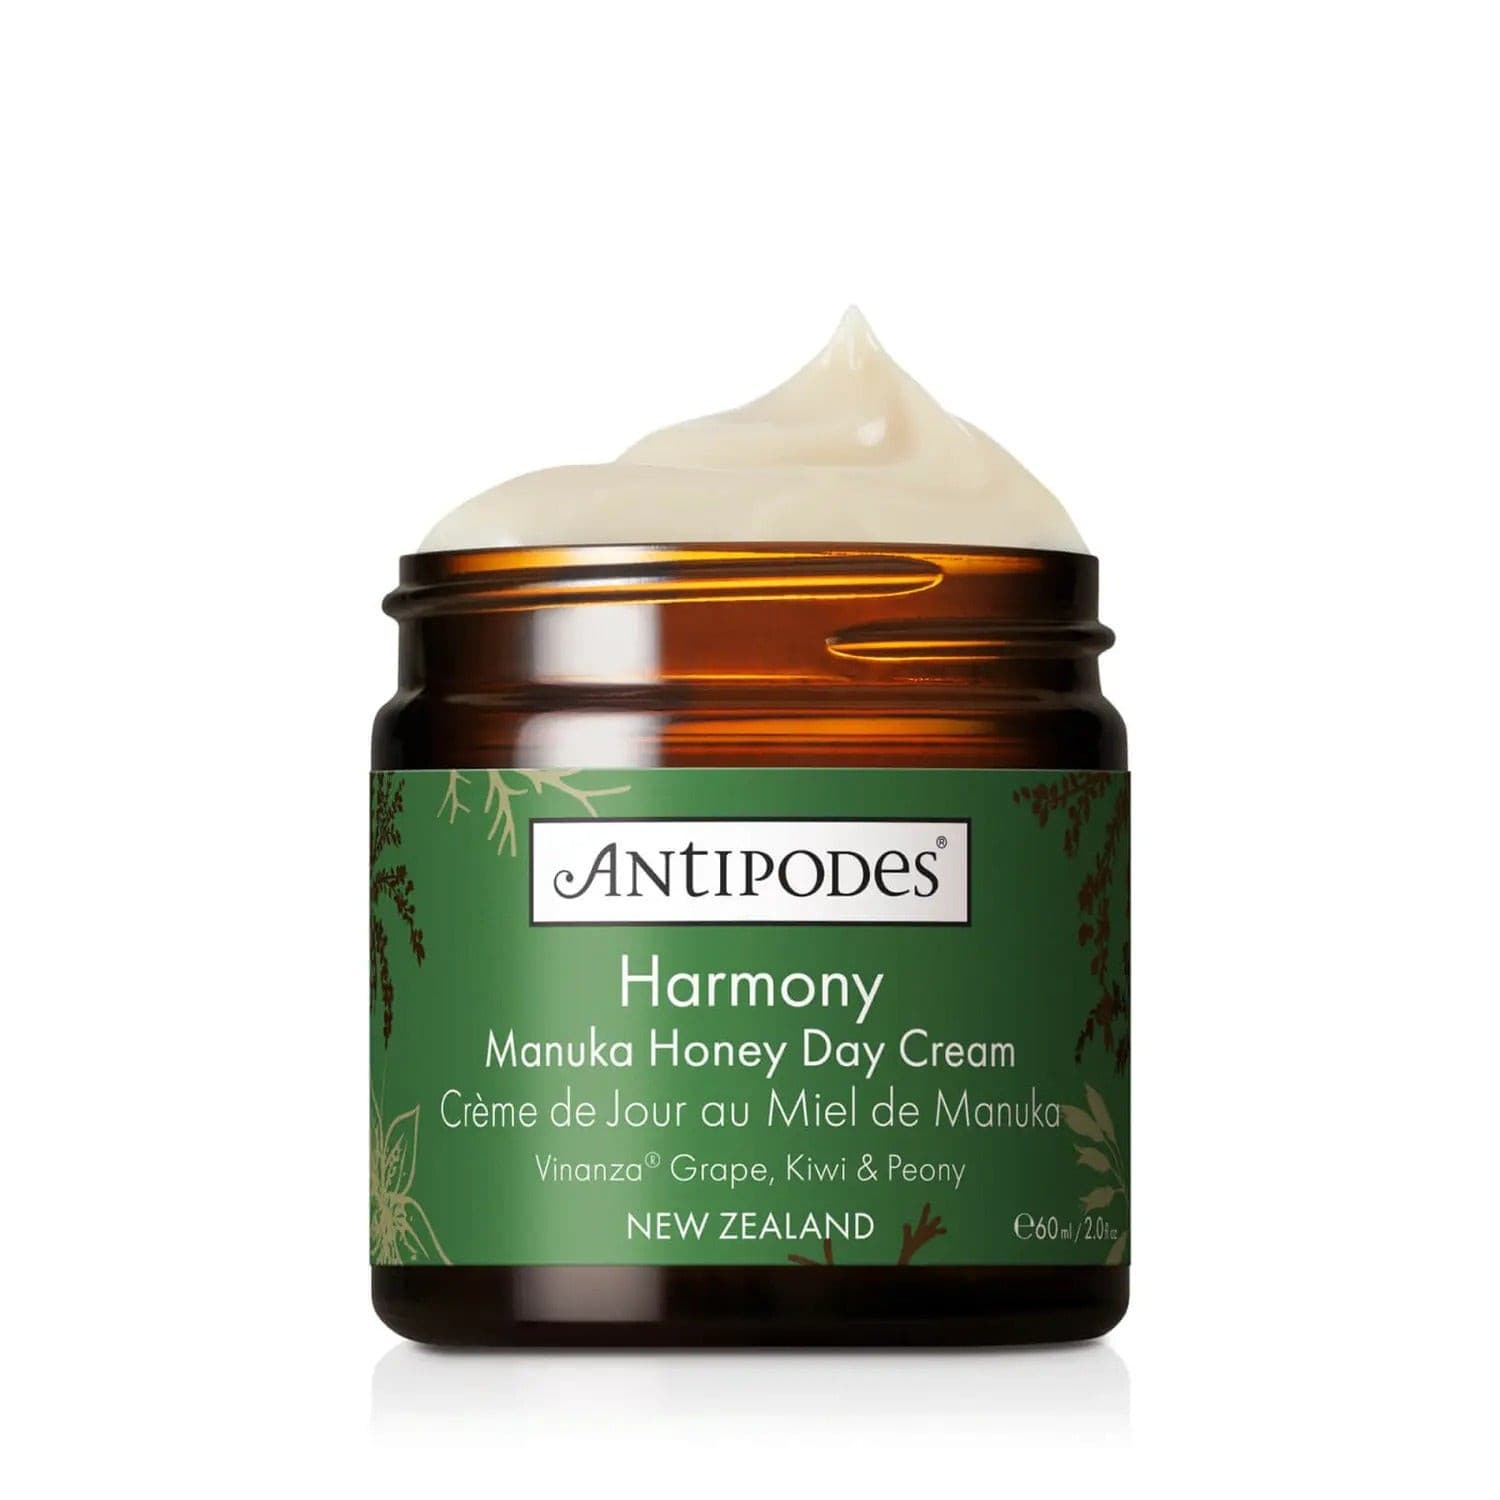 Antipodes Harmony Manuka Honey Day Cream 60ml.